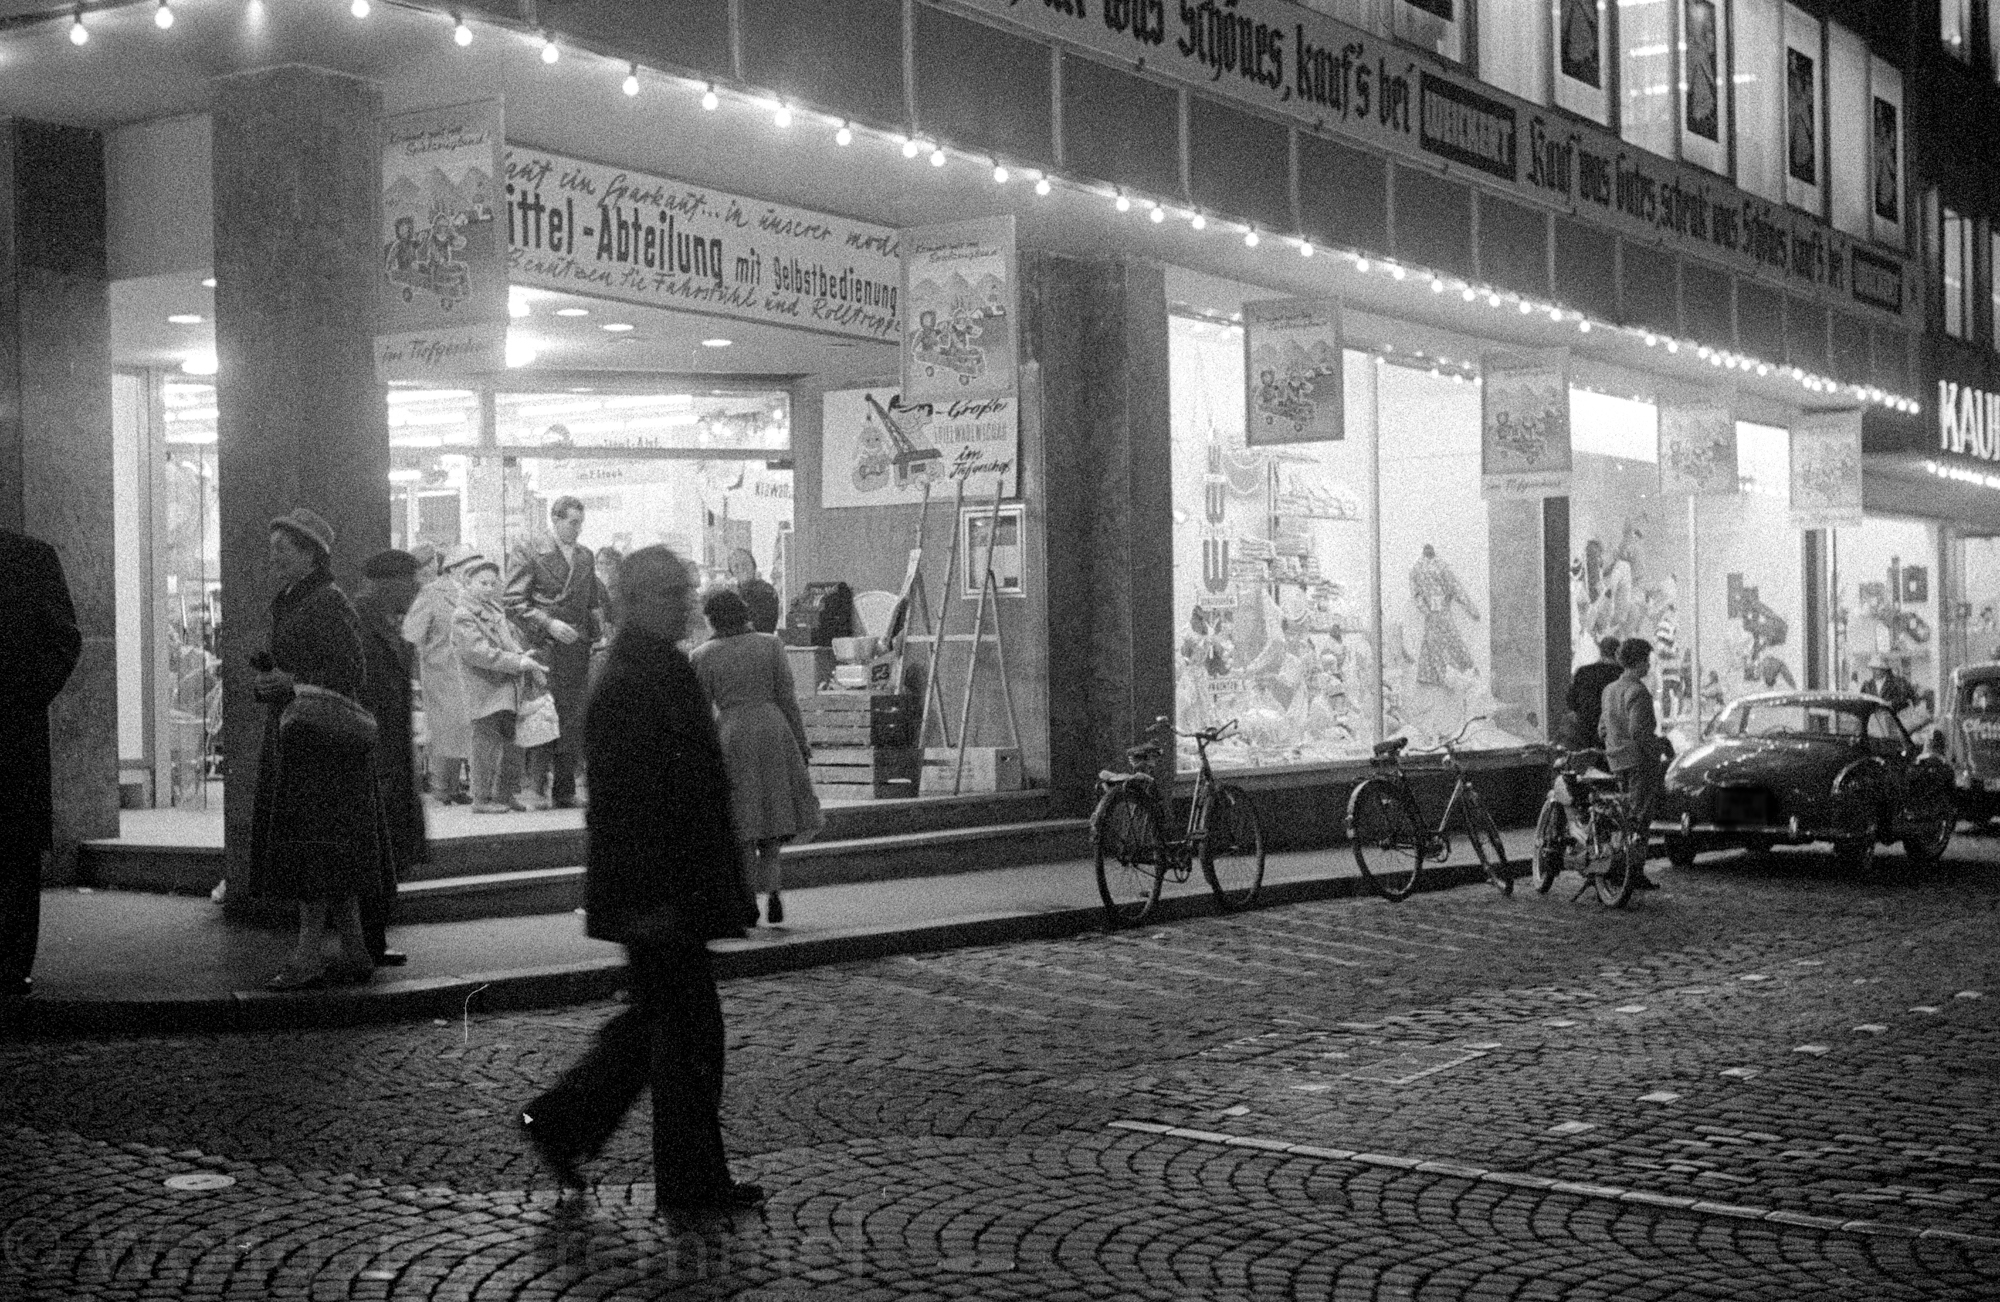 1960: Abend-Shopping bei Weickert in Neustadt